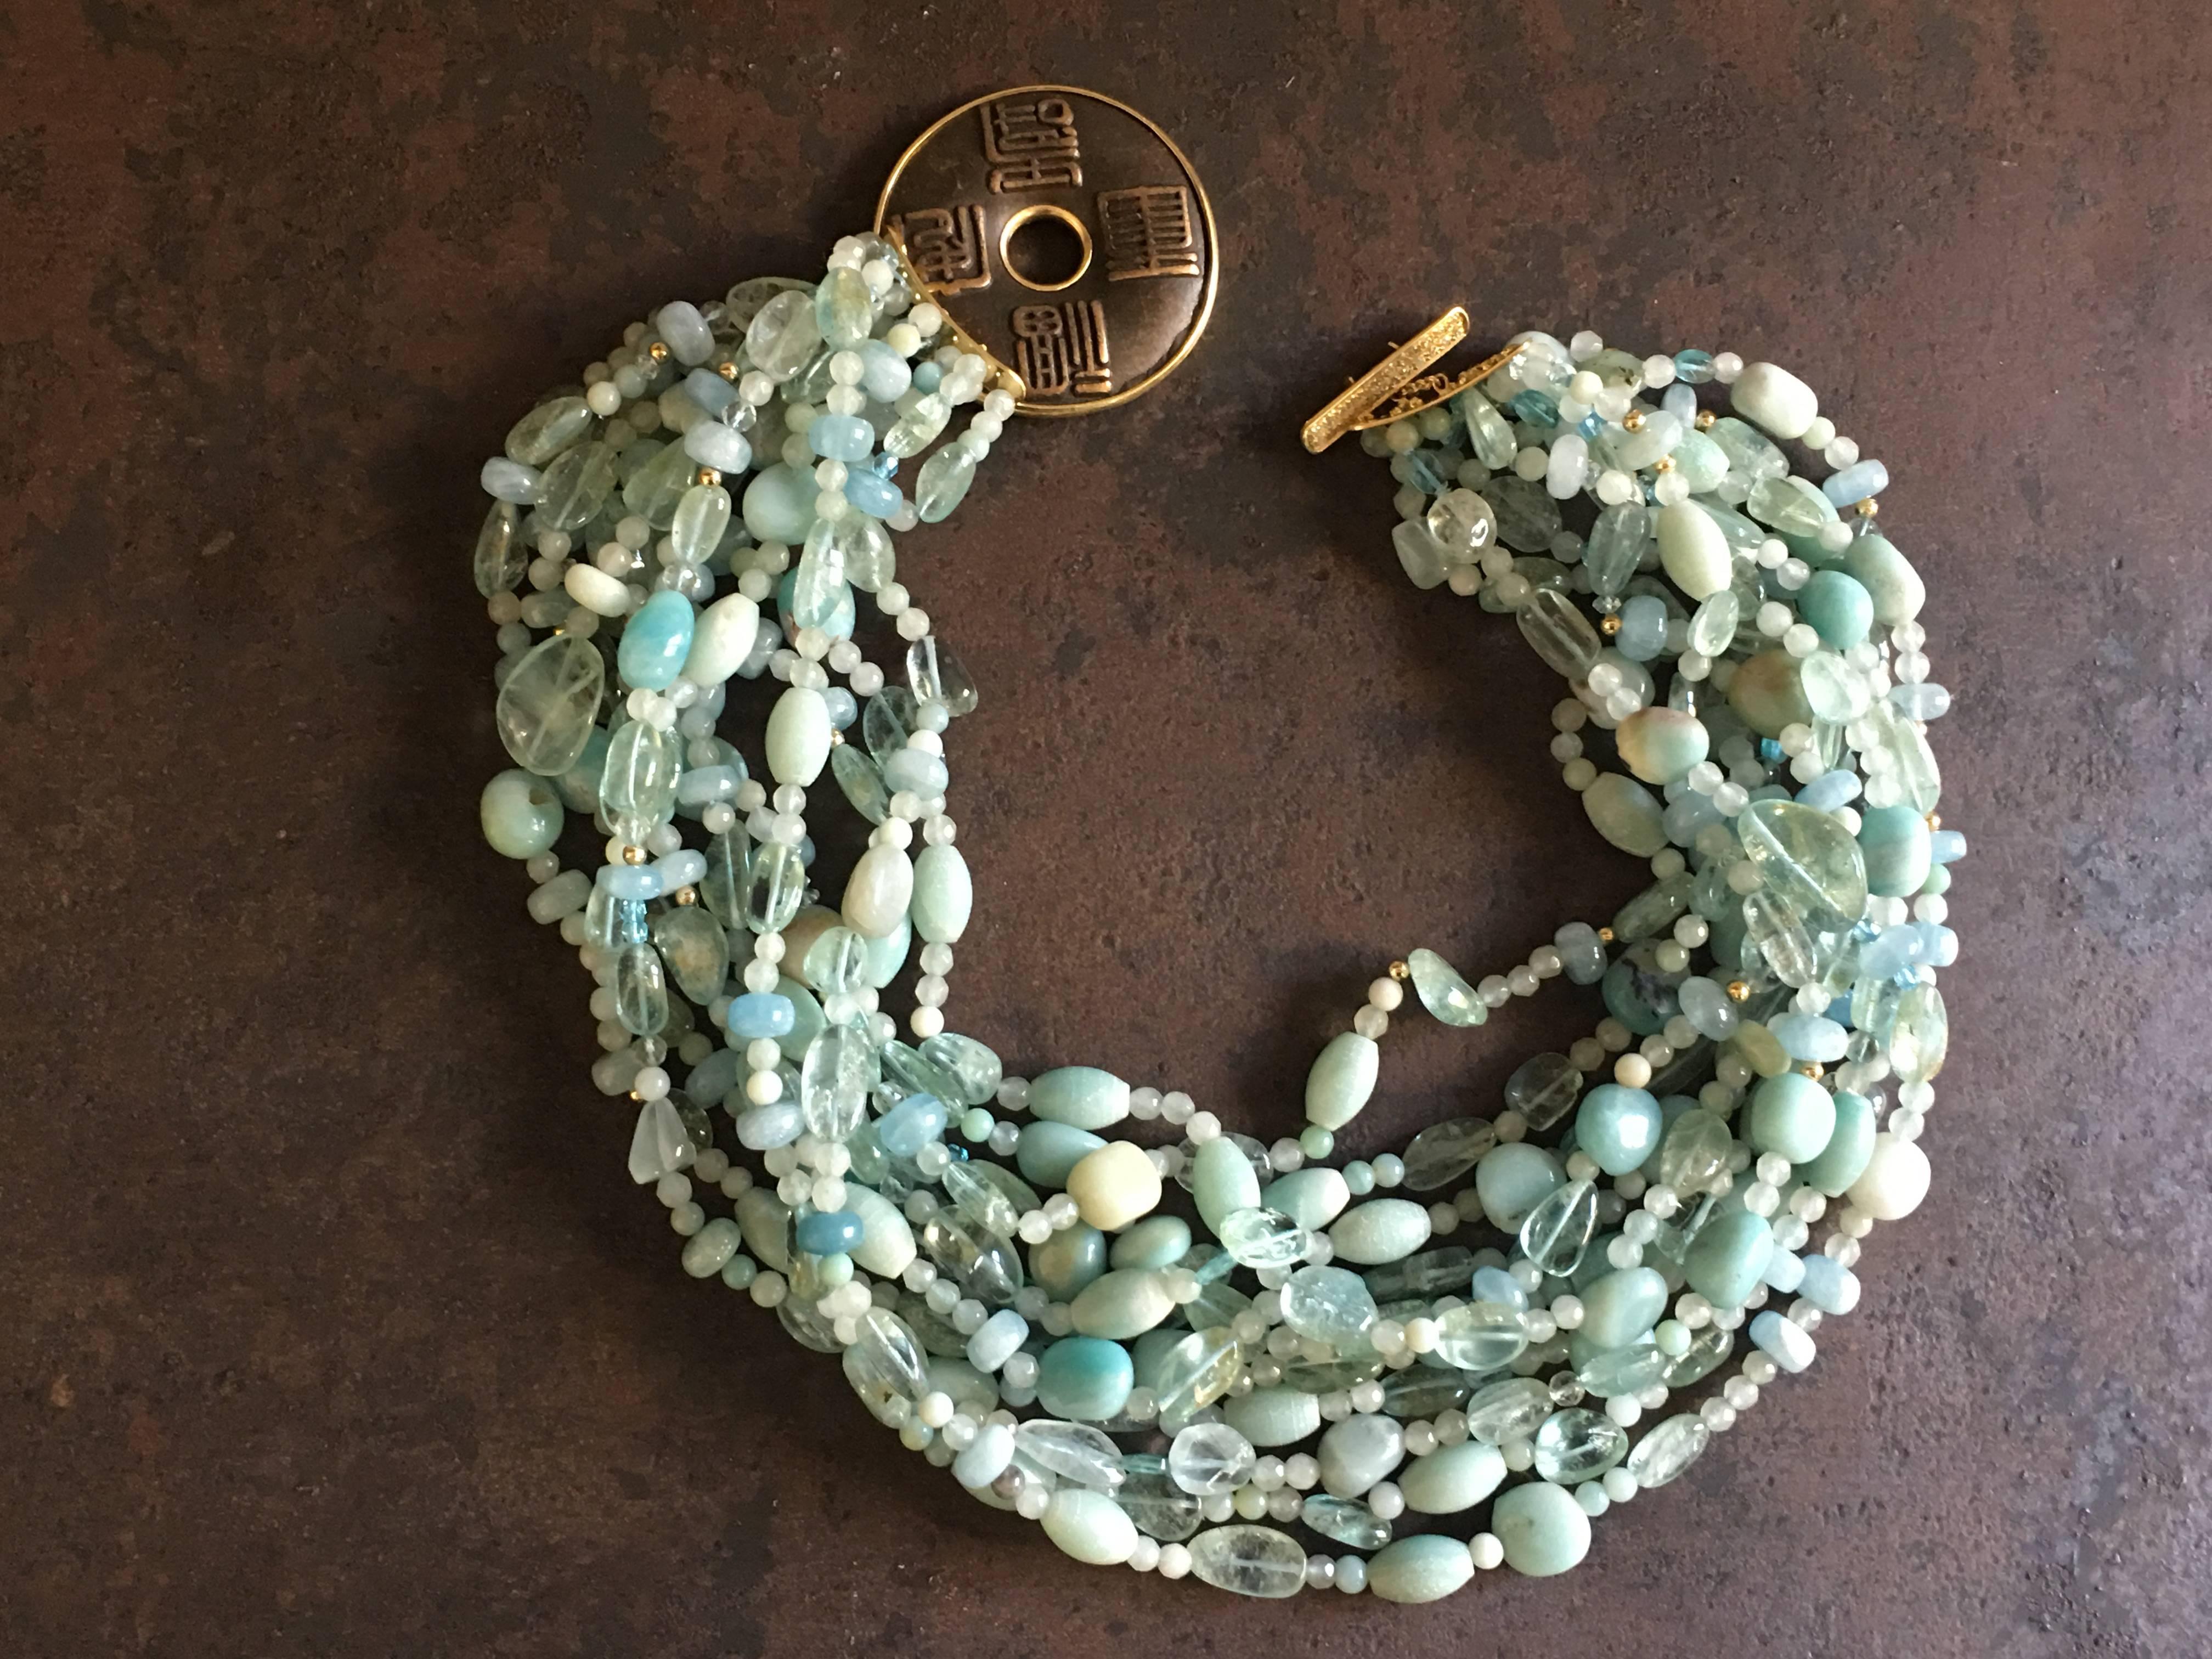 Multi String Halskette mit verschiedenen Form und Farbe der Aquamarin Stein, Amazonit, Gold Perlen.  Die abschließende Halskette war eine antike japanische Bronzemünze, veredelt mit Gold und Diamanten. Länge 45 cm.
Alle Schmuckstücke sind neu und